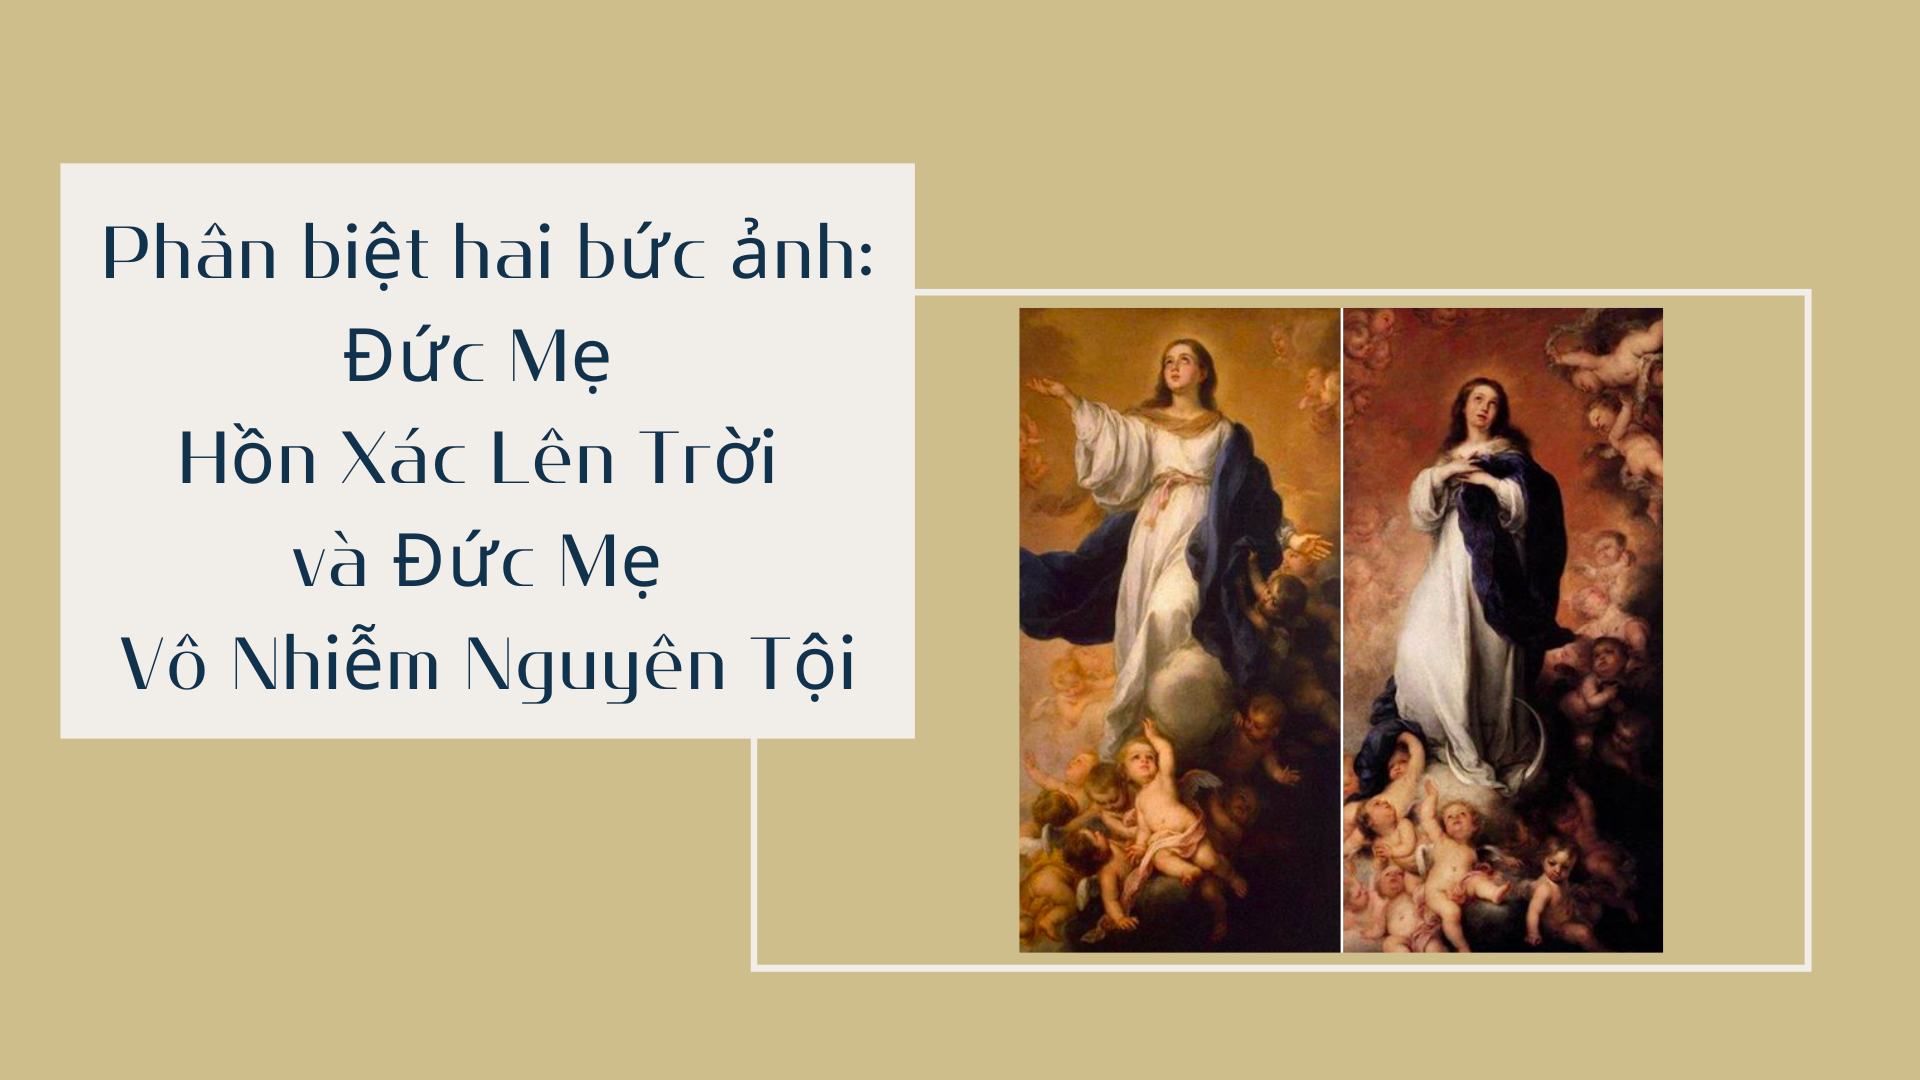 Phân biệt hai bức ảnh: Đức Mẹ Hồn Xác Lên Trời và Đức Mẹ Vô Nhiễm Nguyên Tội